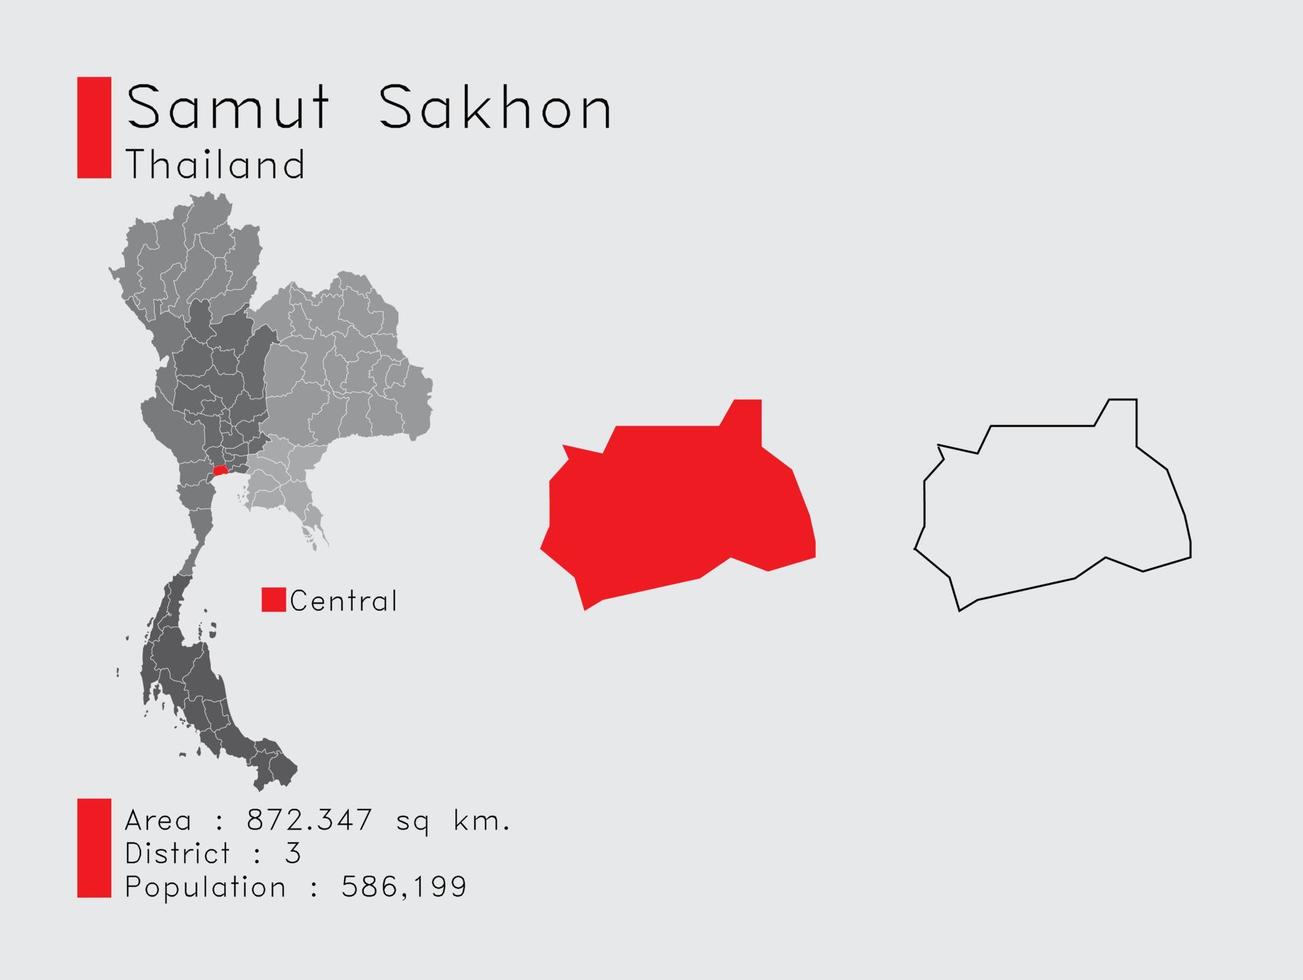 samut sakhon position in thailand eine reihe von infografikelementen für die provinz. und Bereich Bezirk Bevölkerung und Gliederung. Vektor mit grauem Hintergrund.